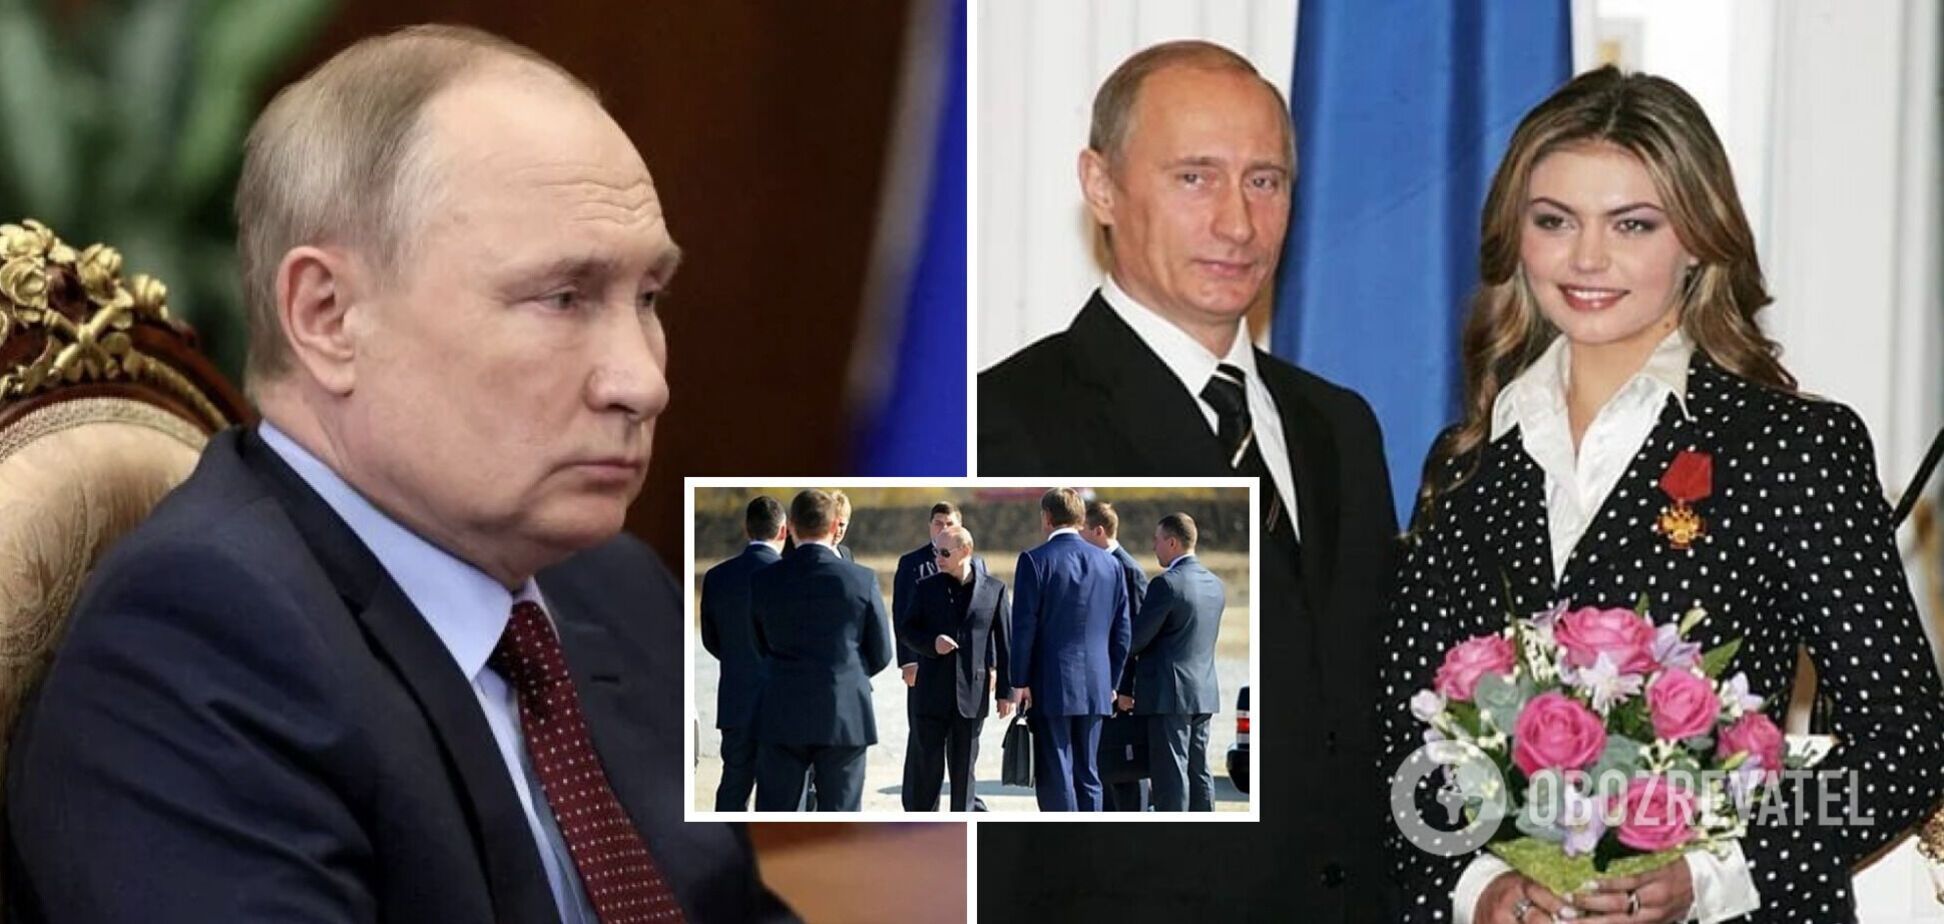 У Кабаевой от Путина трое детей, но она закрутила роман с телохранителем: как выглядят потомки диктатора и что скрывают в Кремле